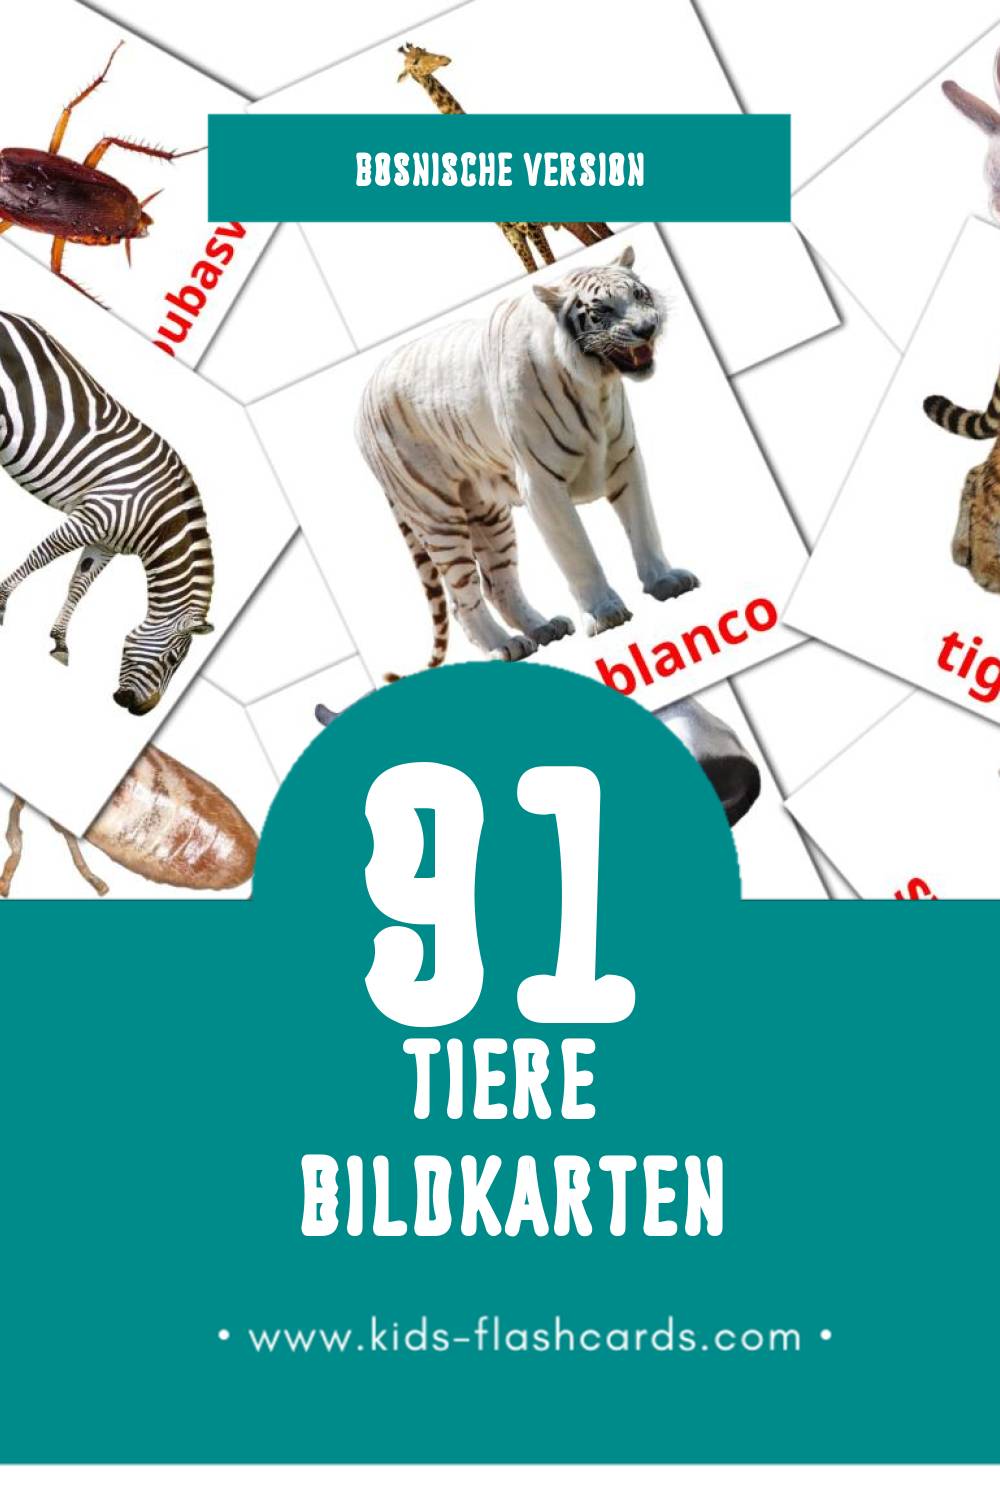 Visuele Životinje Flashcards voor Kleuters (69 kaarten in het Bosnisch)